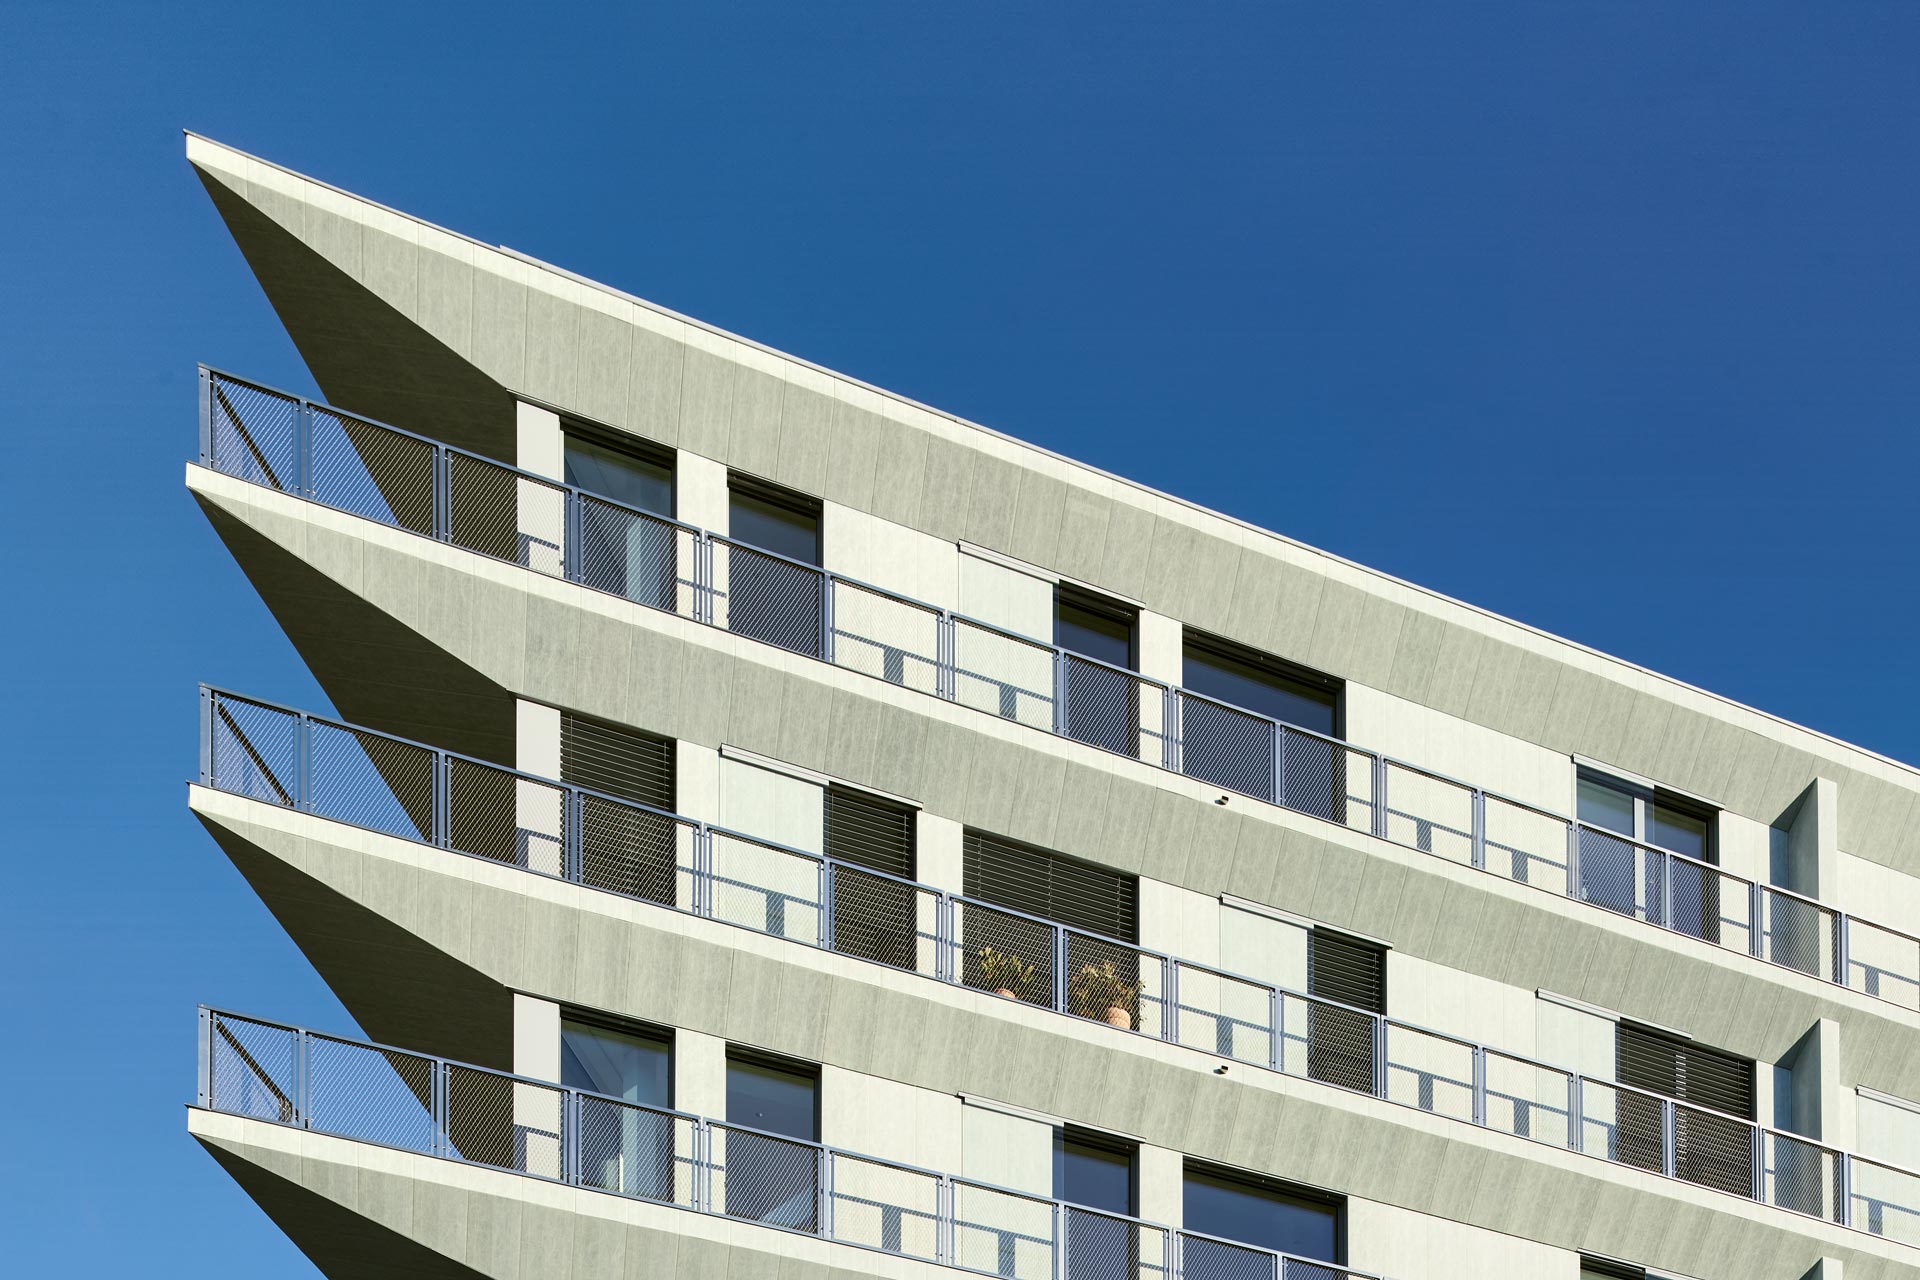 Stainless steel railings on modern building